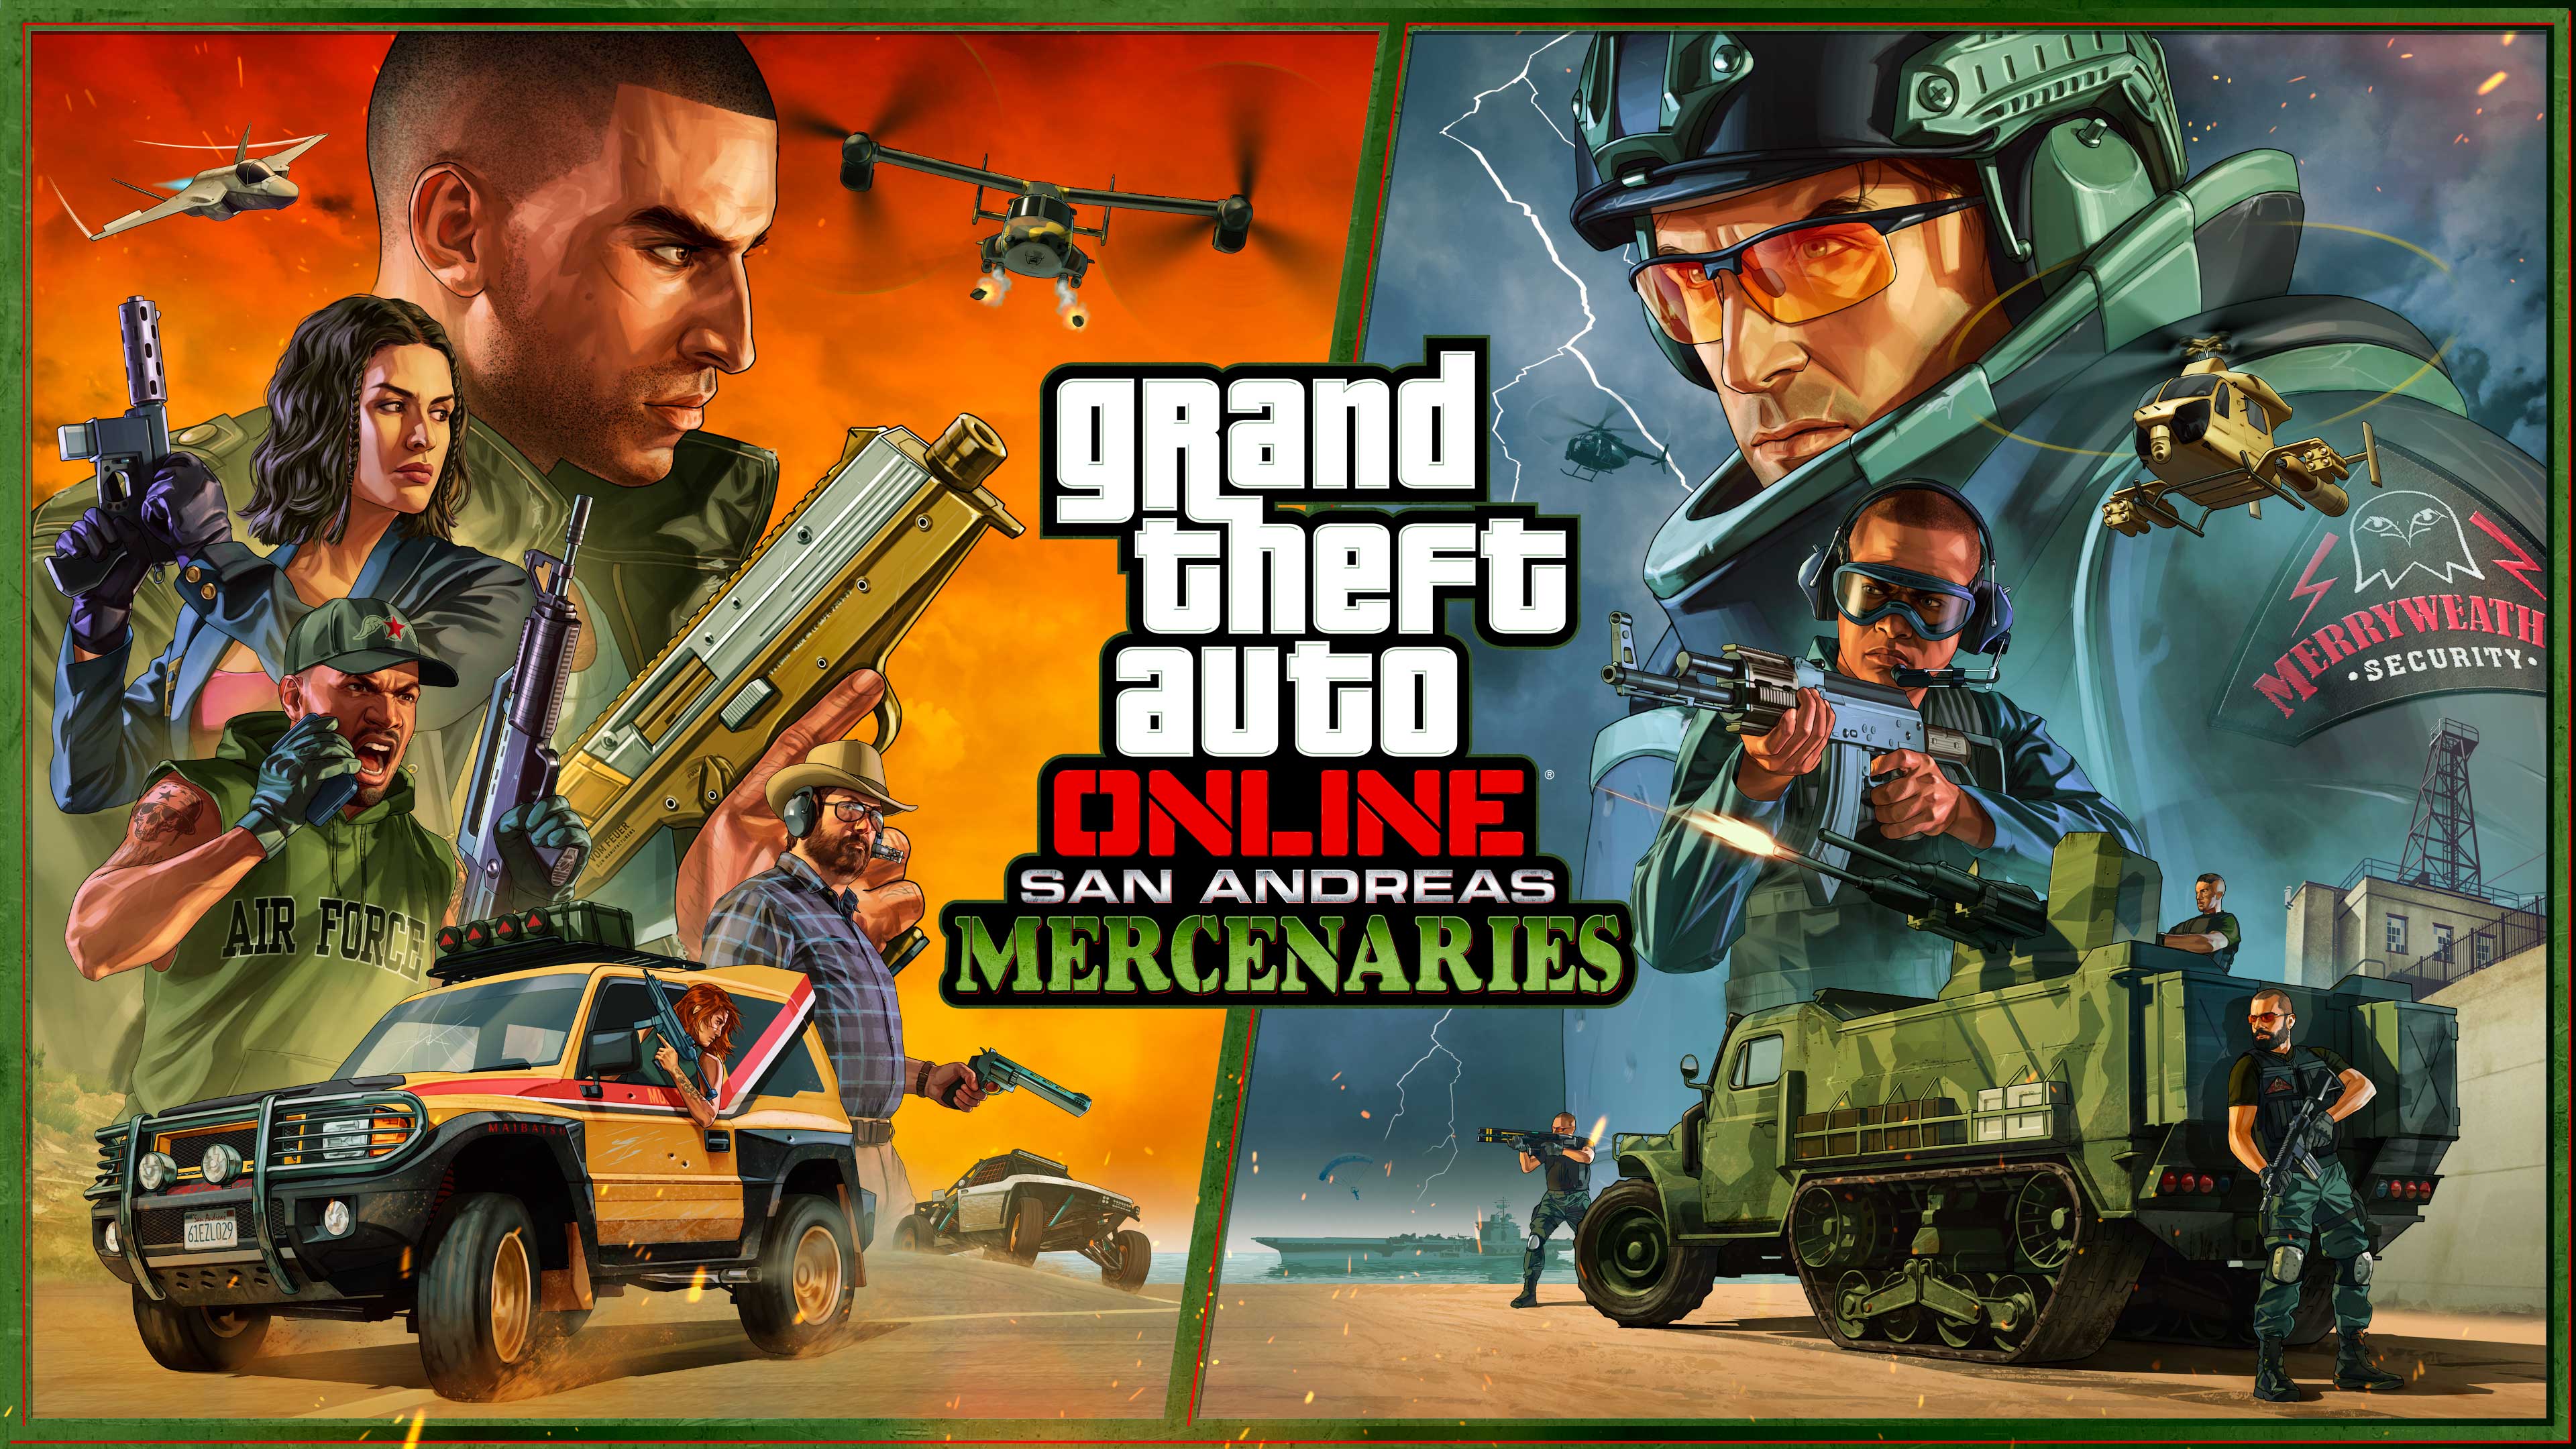 Grand Theft Auto V - Wikipedia